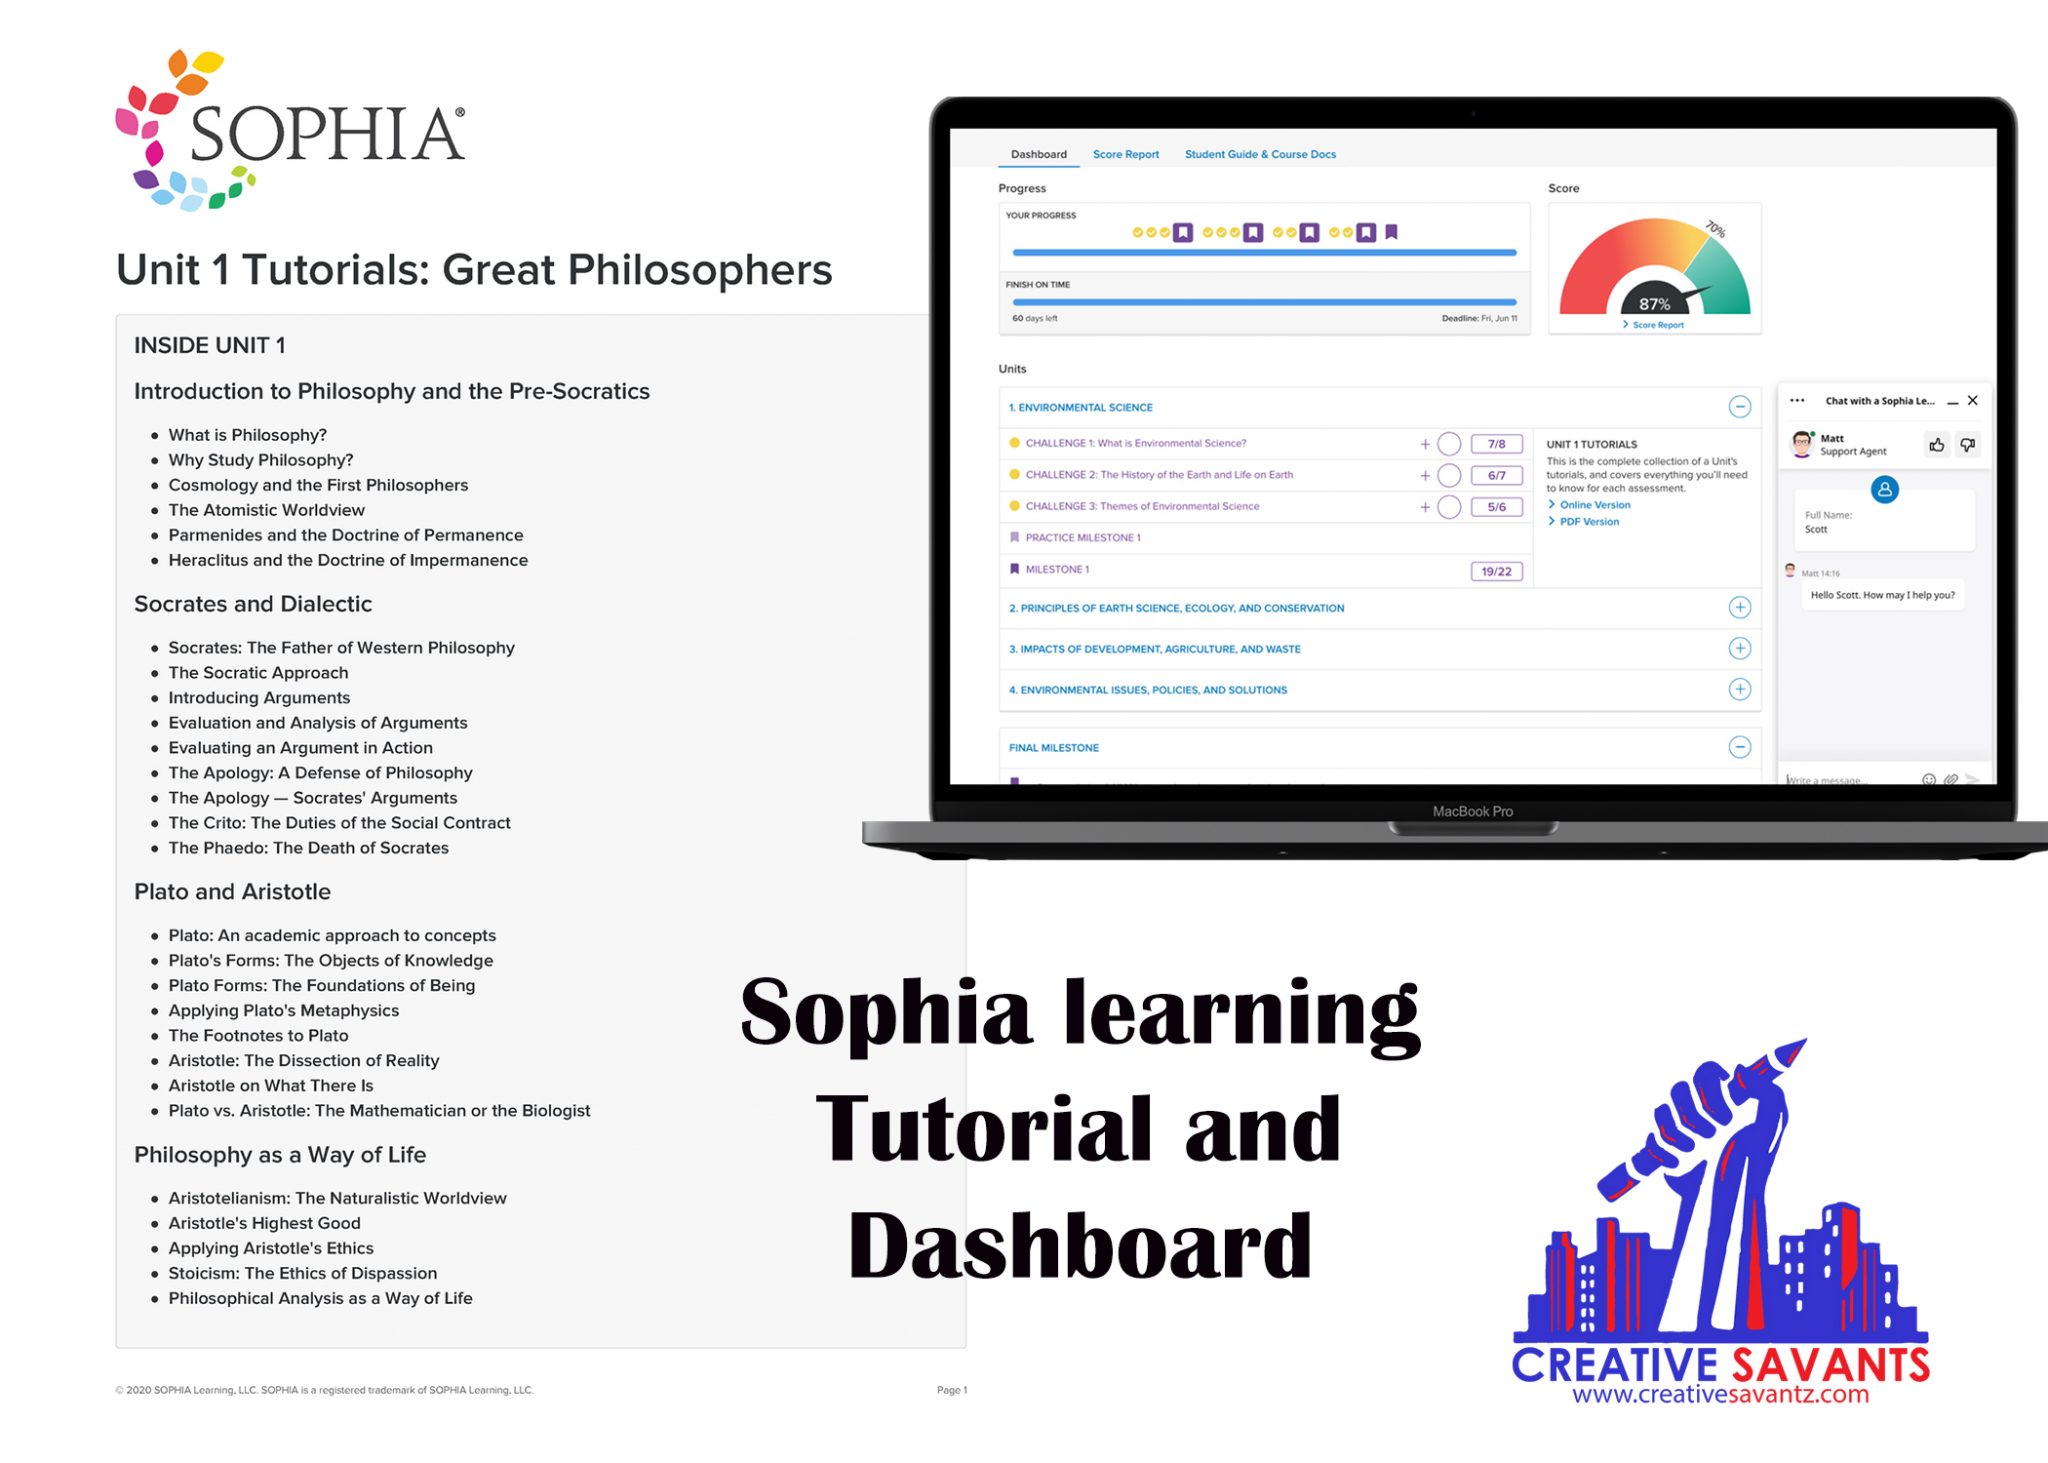 Sophia learning portal